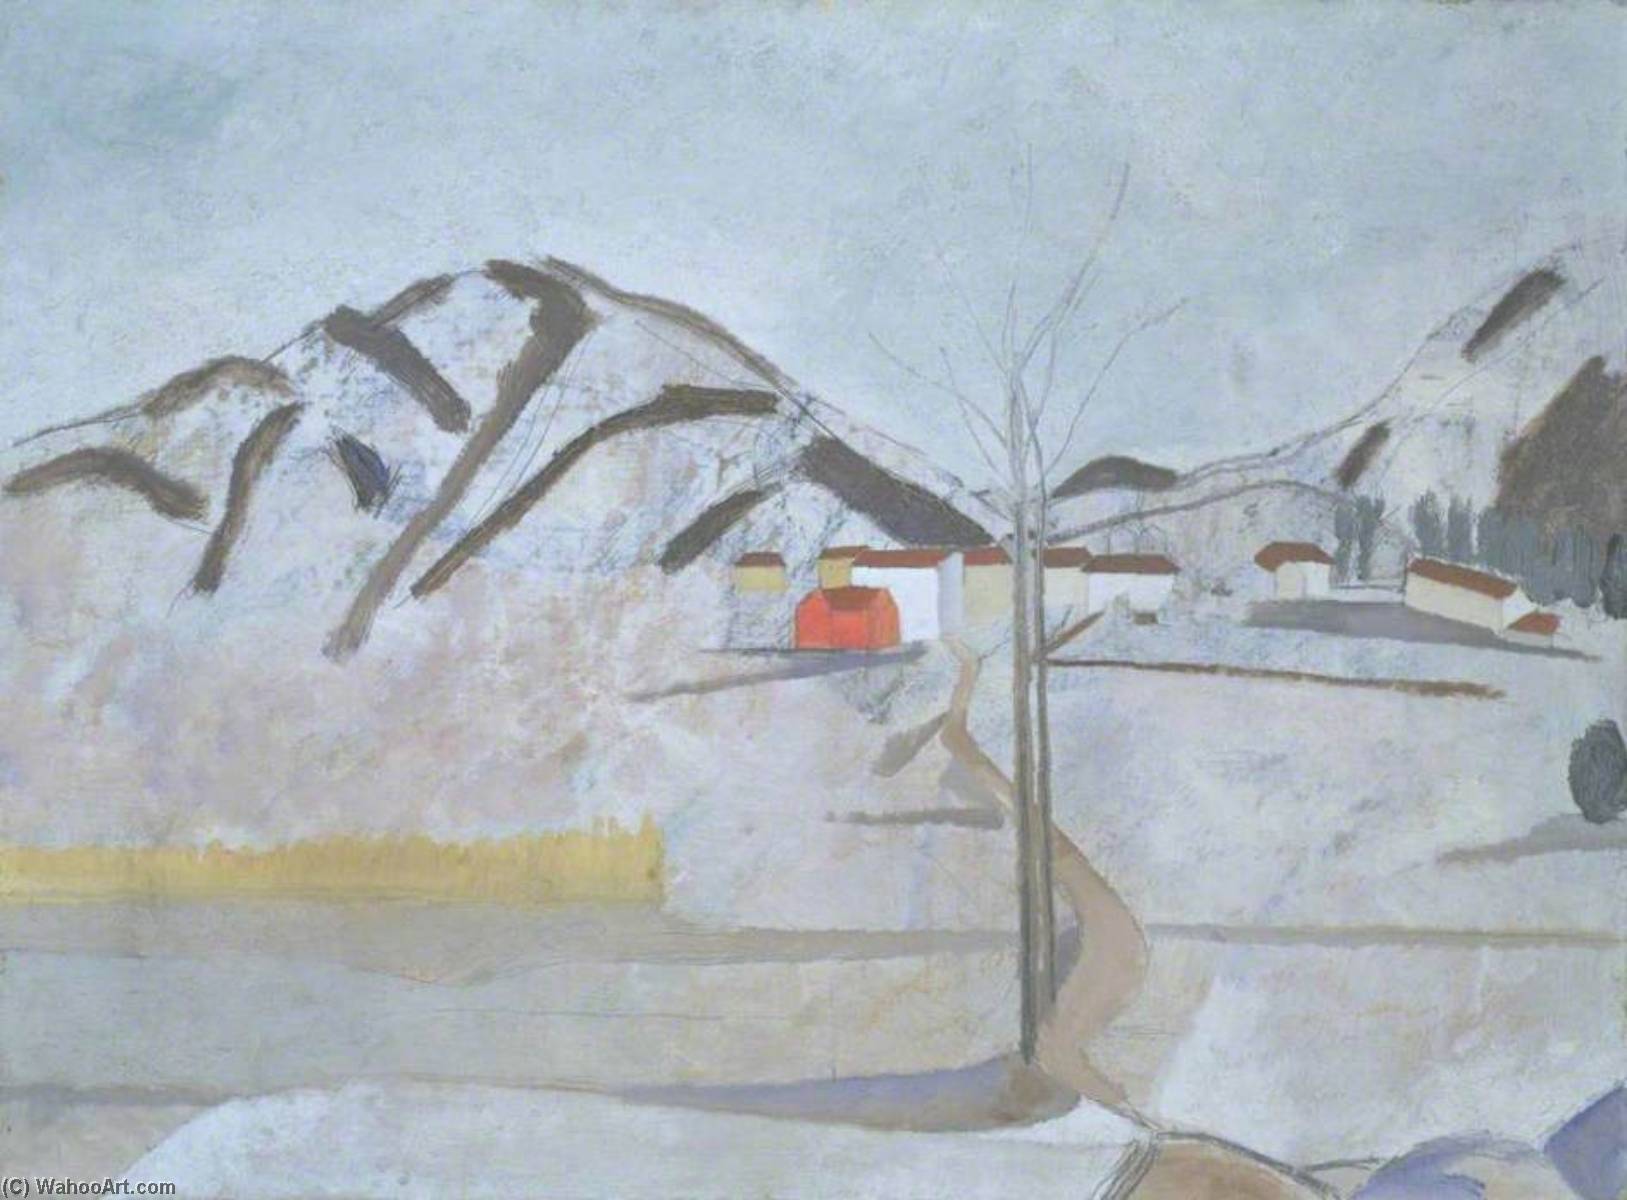 1921 c.1923 (Cortivallo, Lugano), 1923 by Ben Nicholson Ben Nicholson | ArtsDot.com